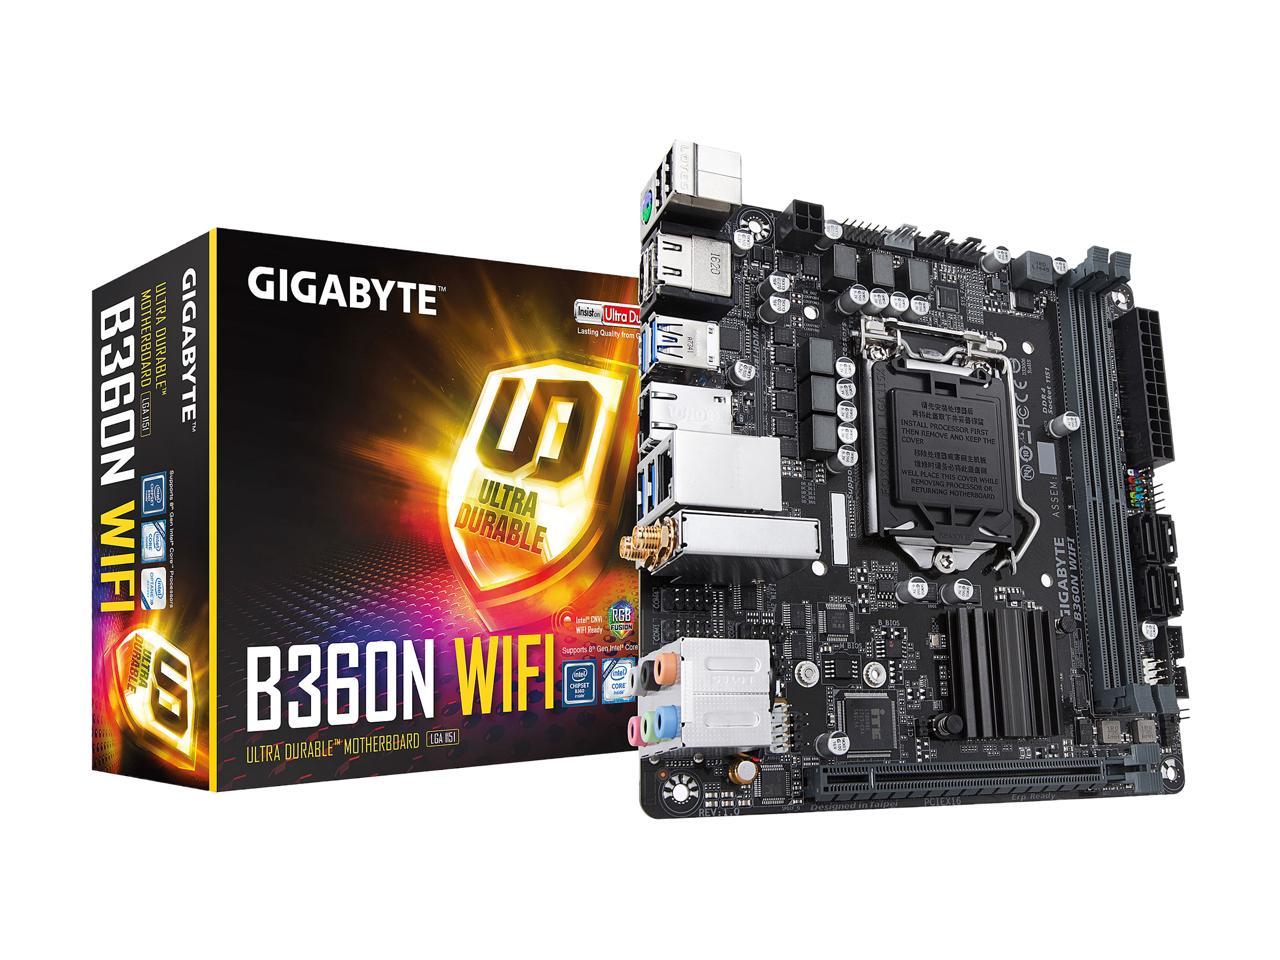 GIGABYTE B360N WIFI LGA 1151 (300 Series) Intel B360 HDMI SATA 6Gb/s USB 3.1 Mini ITX Intel Motherboard